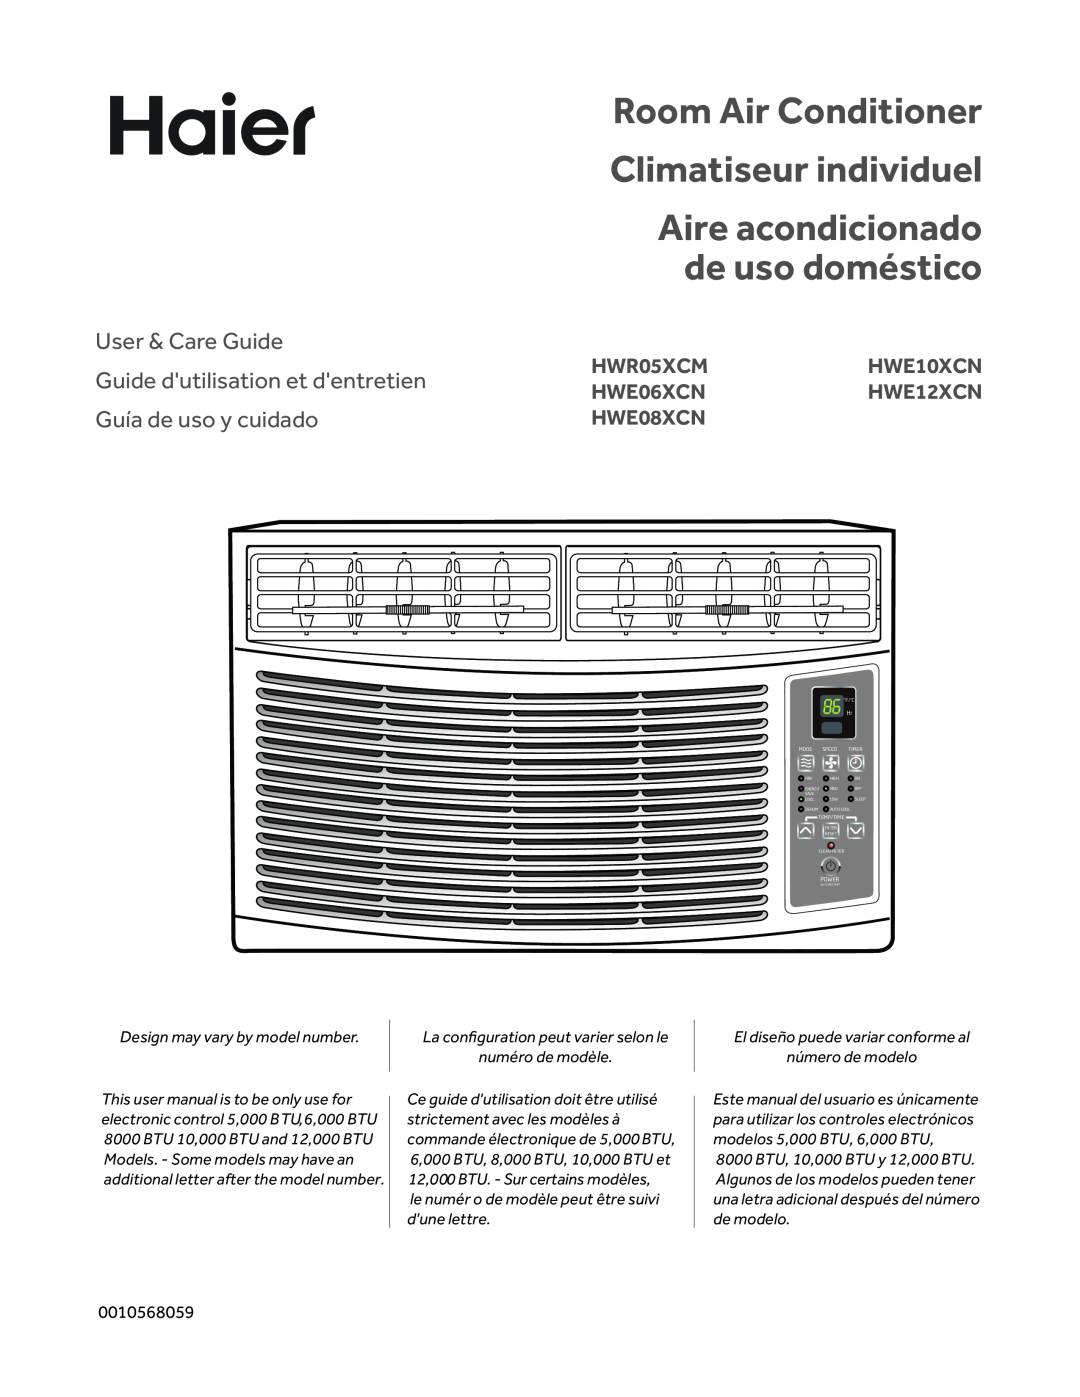 Haier HWE12XCN user manual Room Air Conditioner Climatiseur individuel, Aire acondicionado de uso doméstico, HWR05XCM 